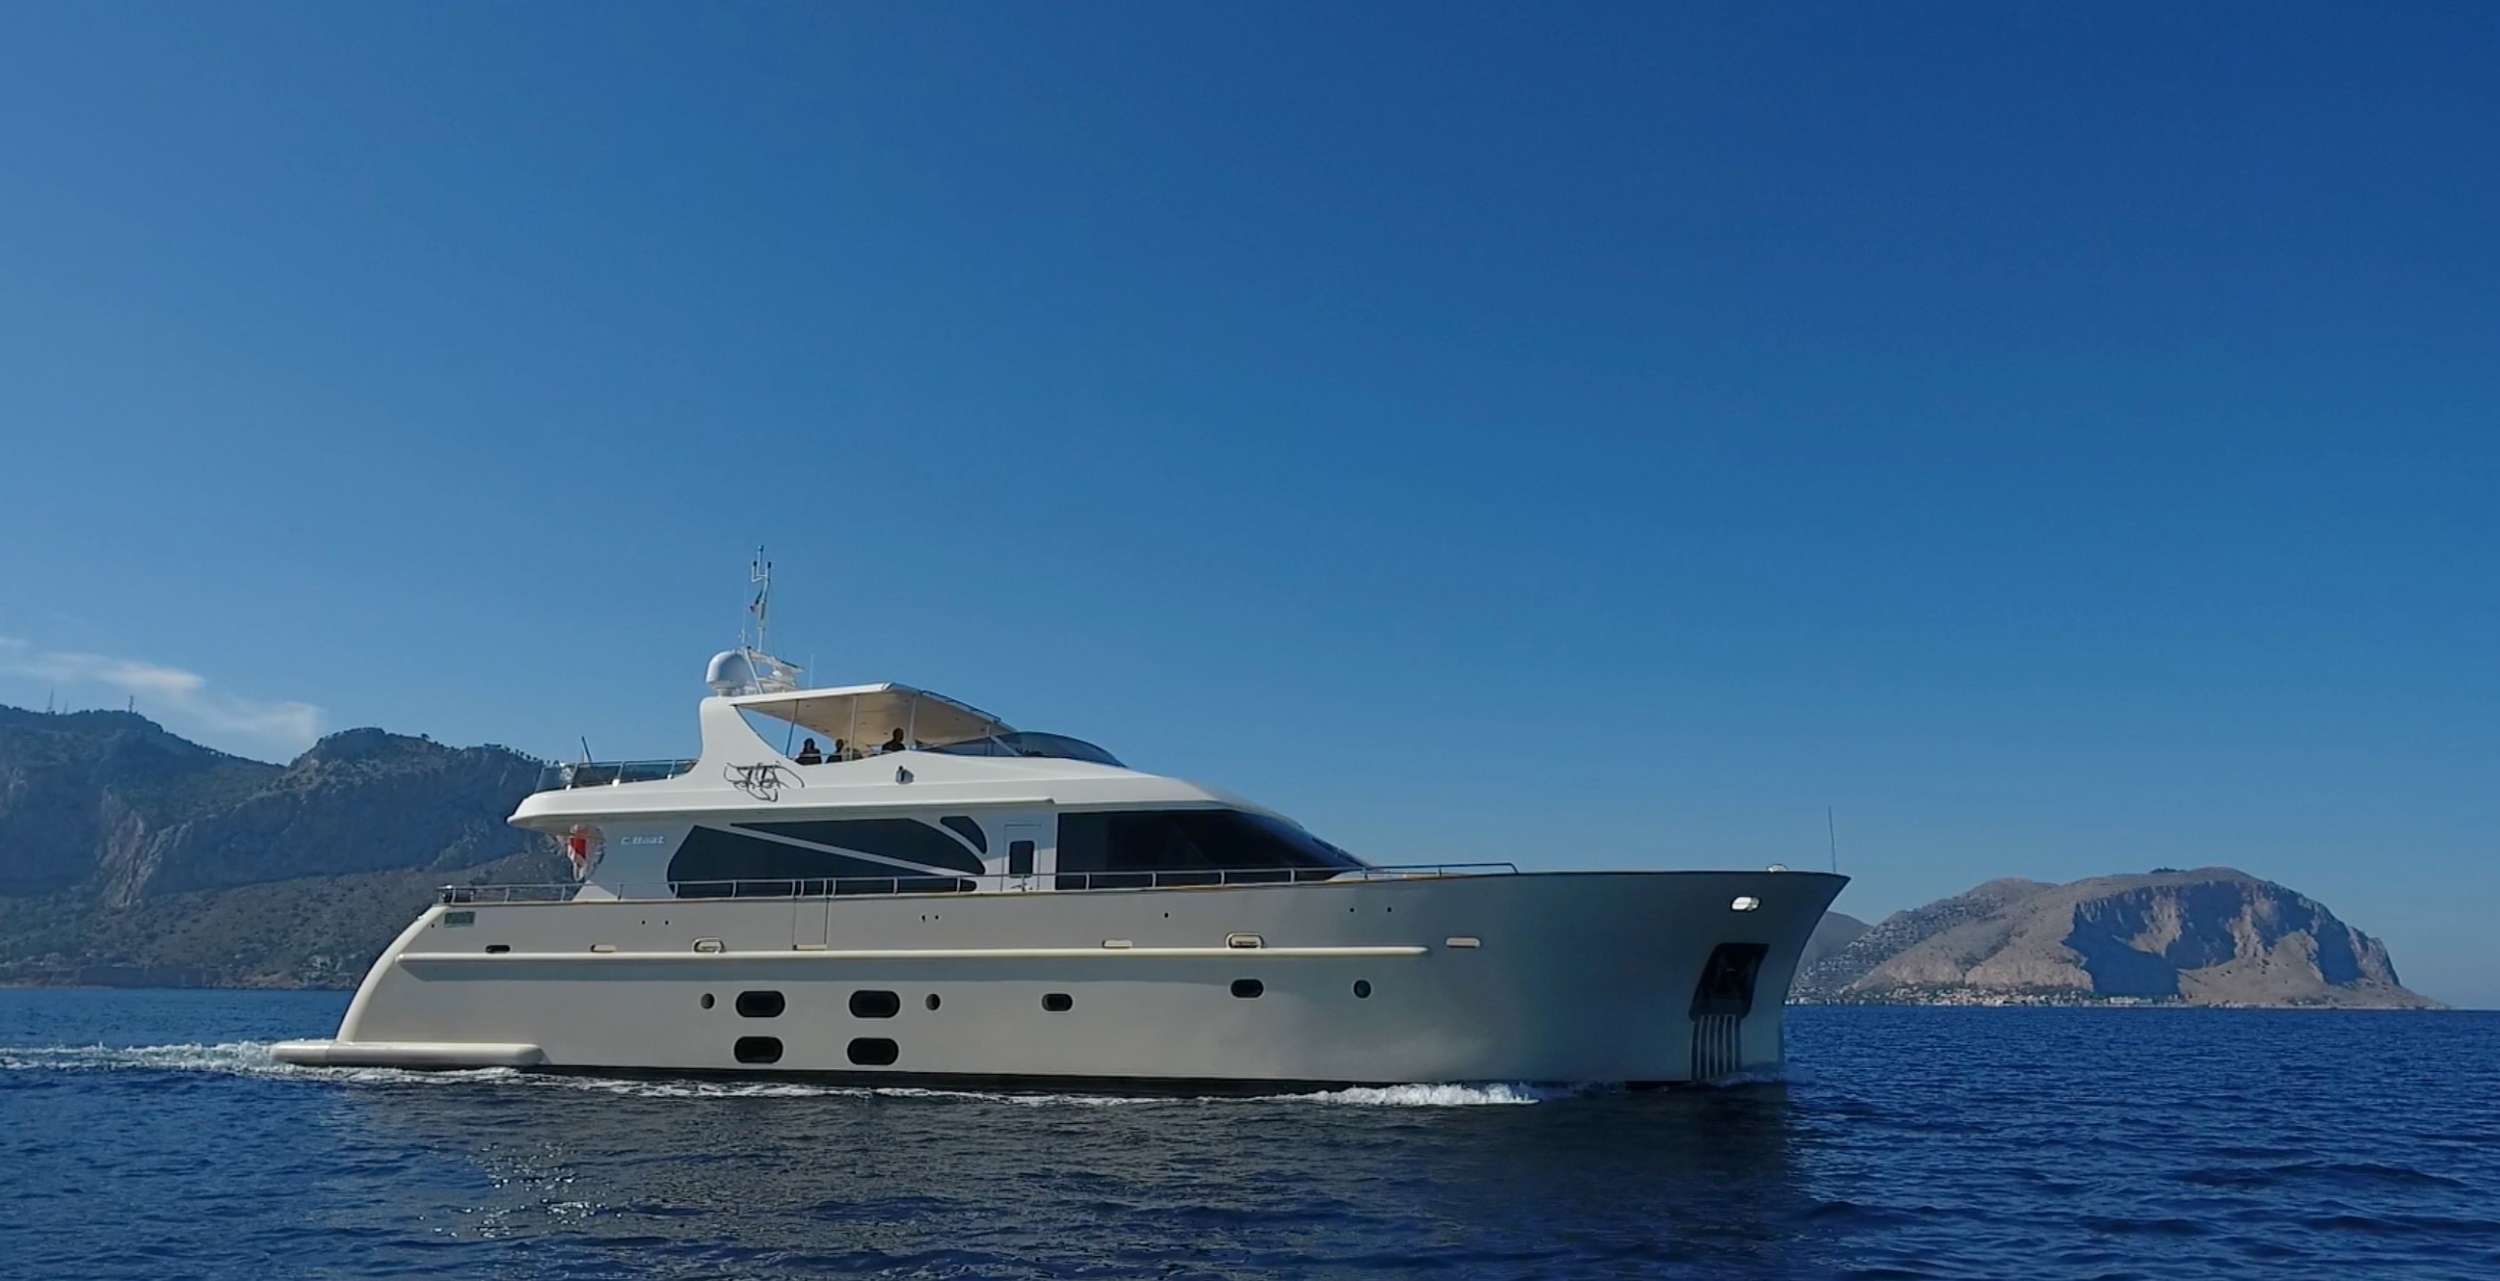 aria c - Yacht Charter Vibo Marina & Boat hire in Riviera, Cors, Sard, Italy, Spain, Turkey, Croatia, Greece 1